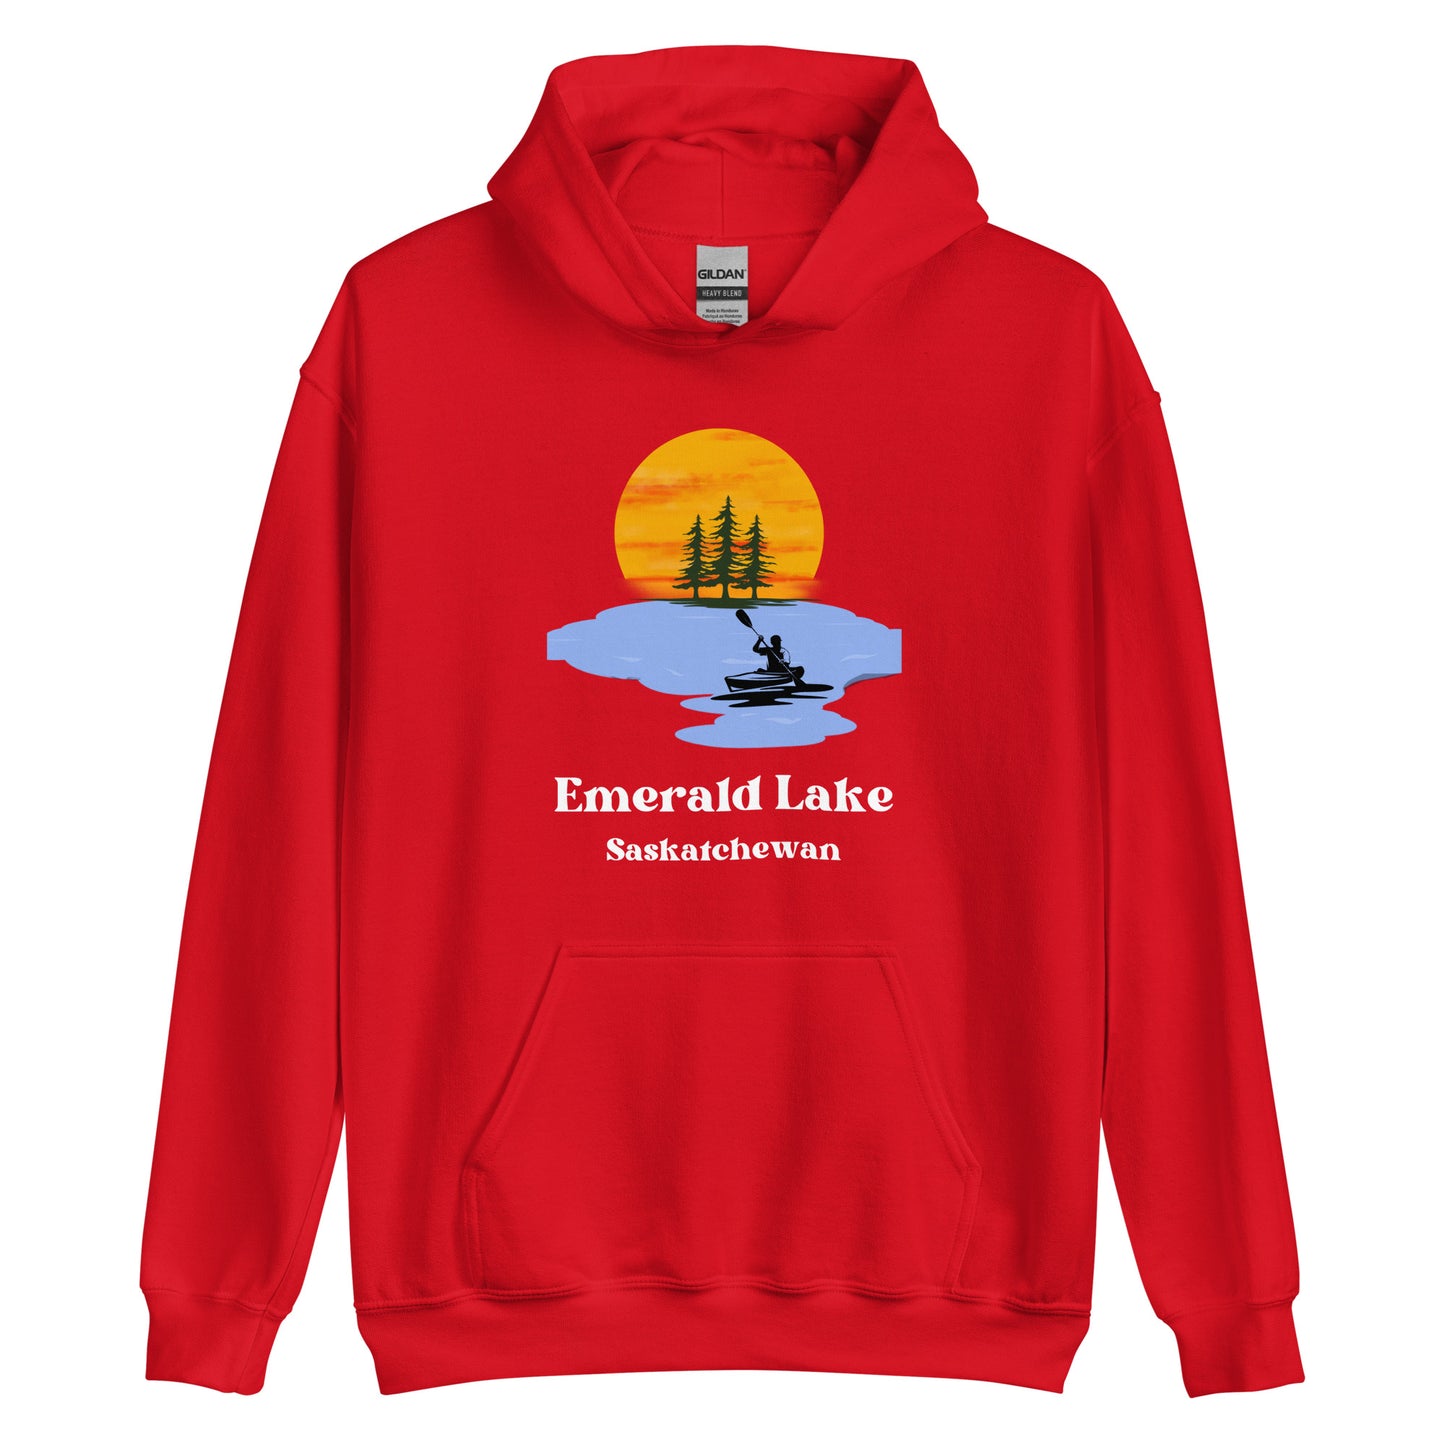 Emerald Lake, SK - Unisex Hoodie - Kayak